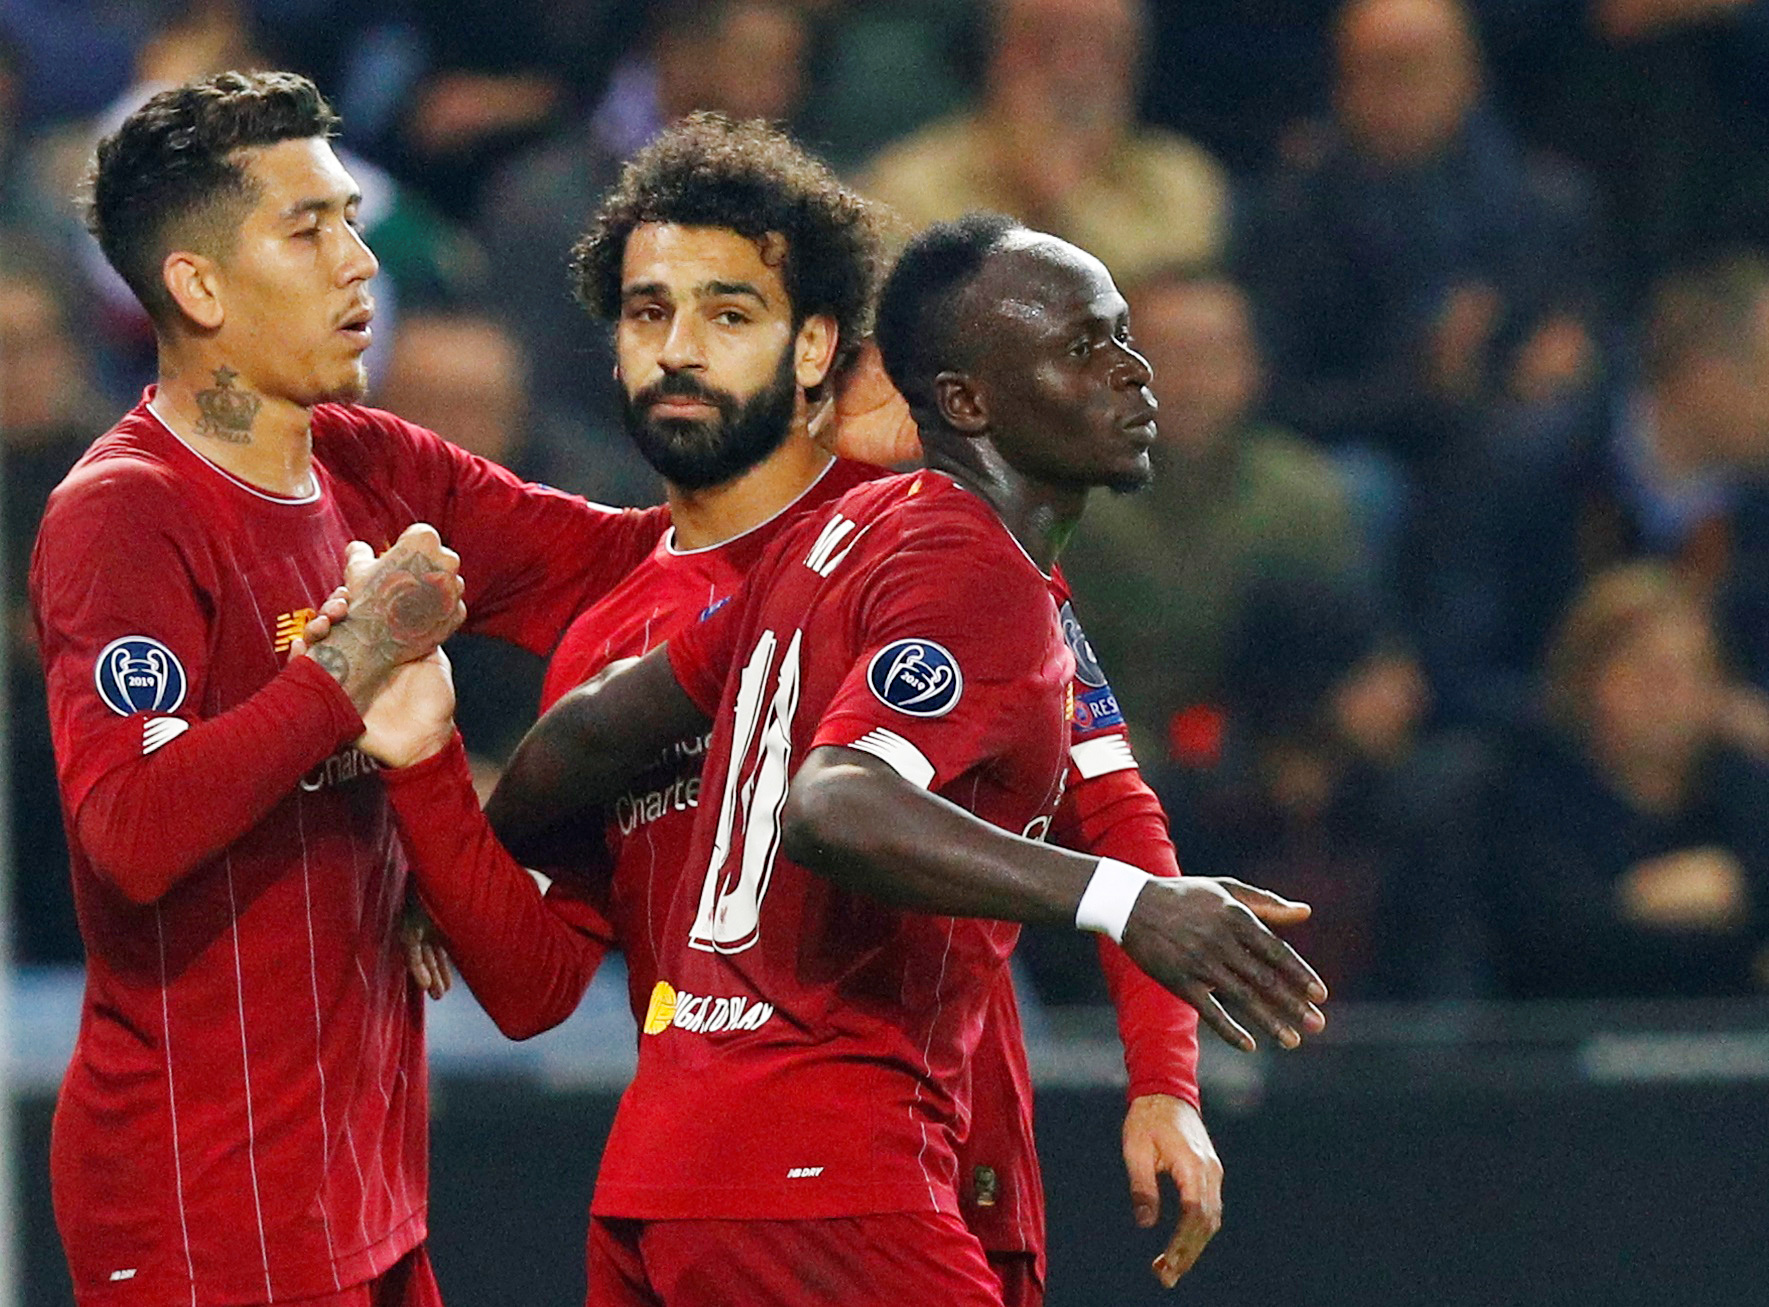 L’astuce que les joueurs de Liverpool vont utiliser pour Supporter Salah et Mané